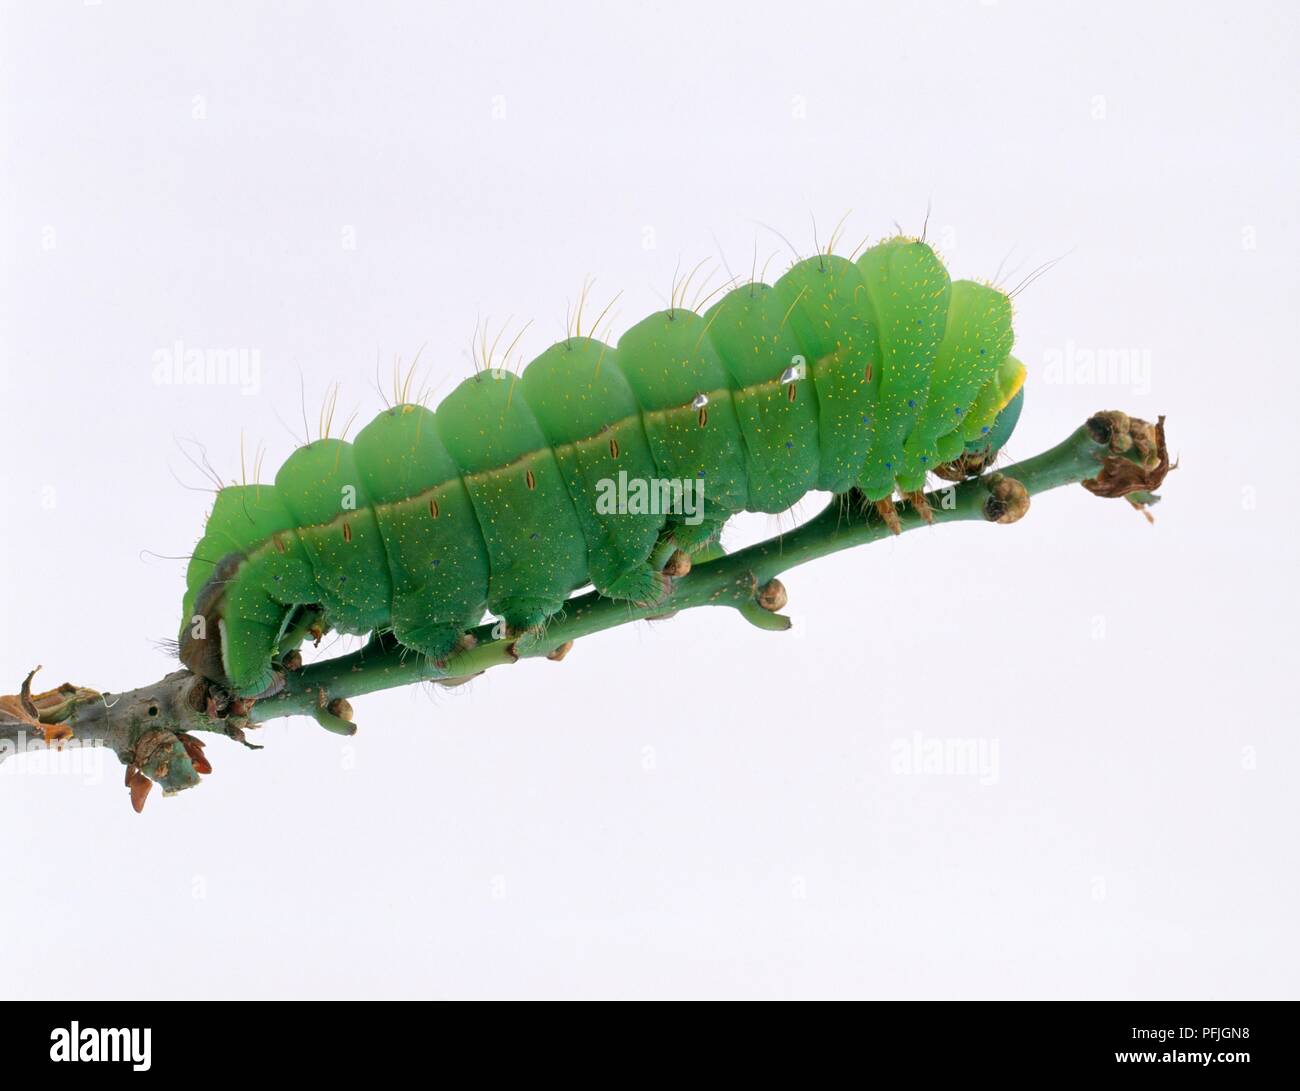 Cinese di seta di quercia tarma (Antheraea pernyi) caterpillar sullo stelo Foto Stock